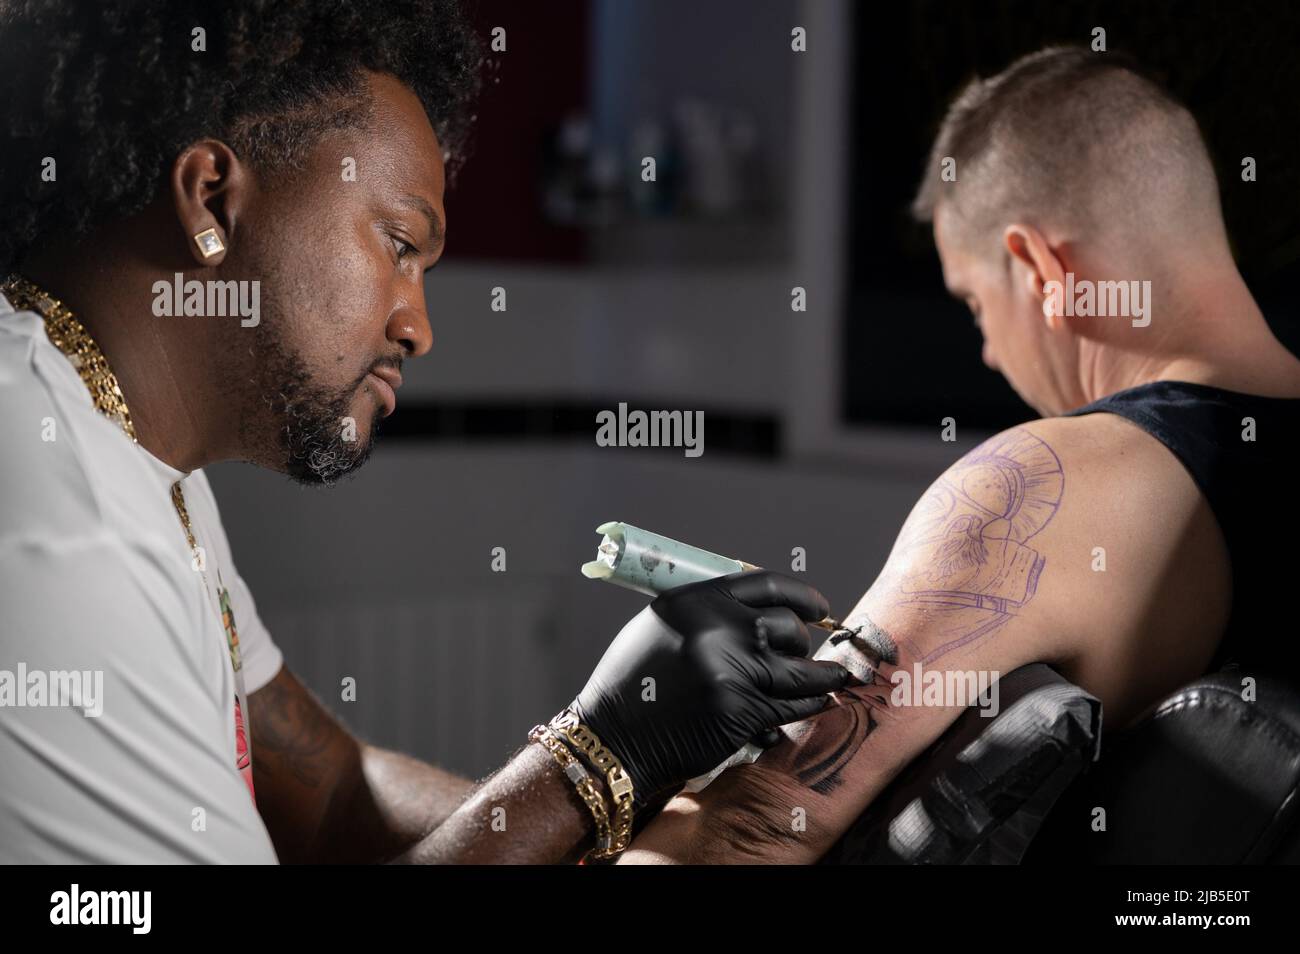 Filmische Aufnahme eines Tattoo-Künstlers, der im Tattoo-Studio Körperkunst kreiert. Hochwertige Fotografie. Stockfoto